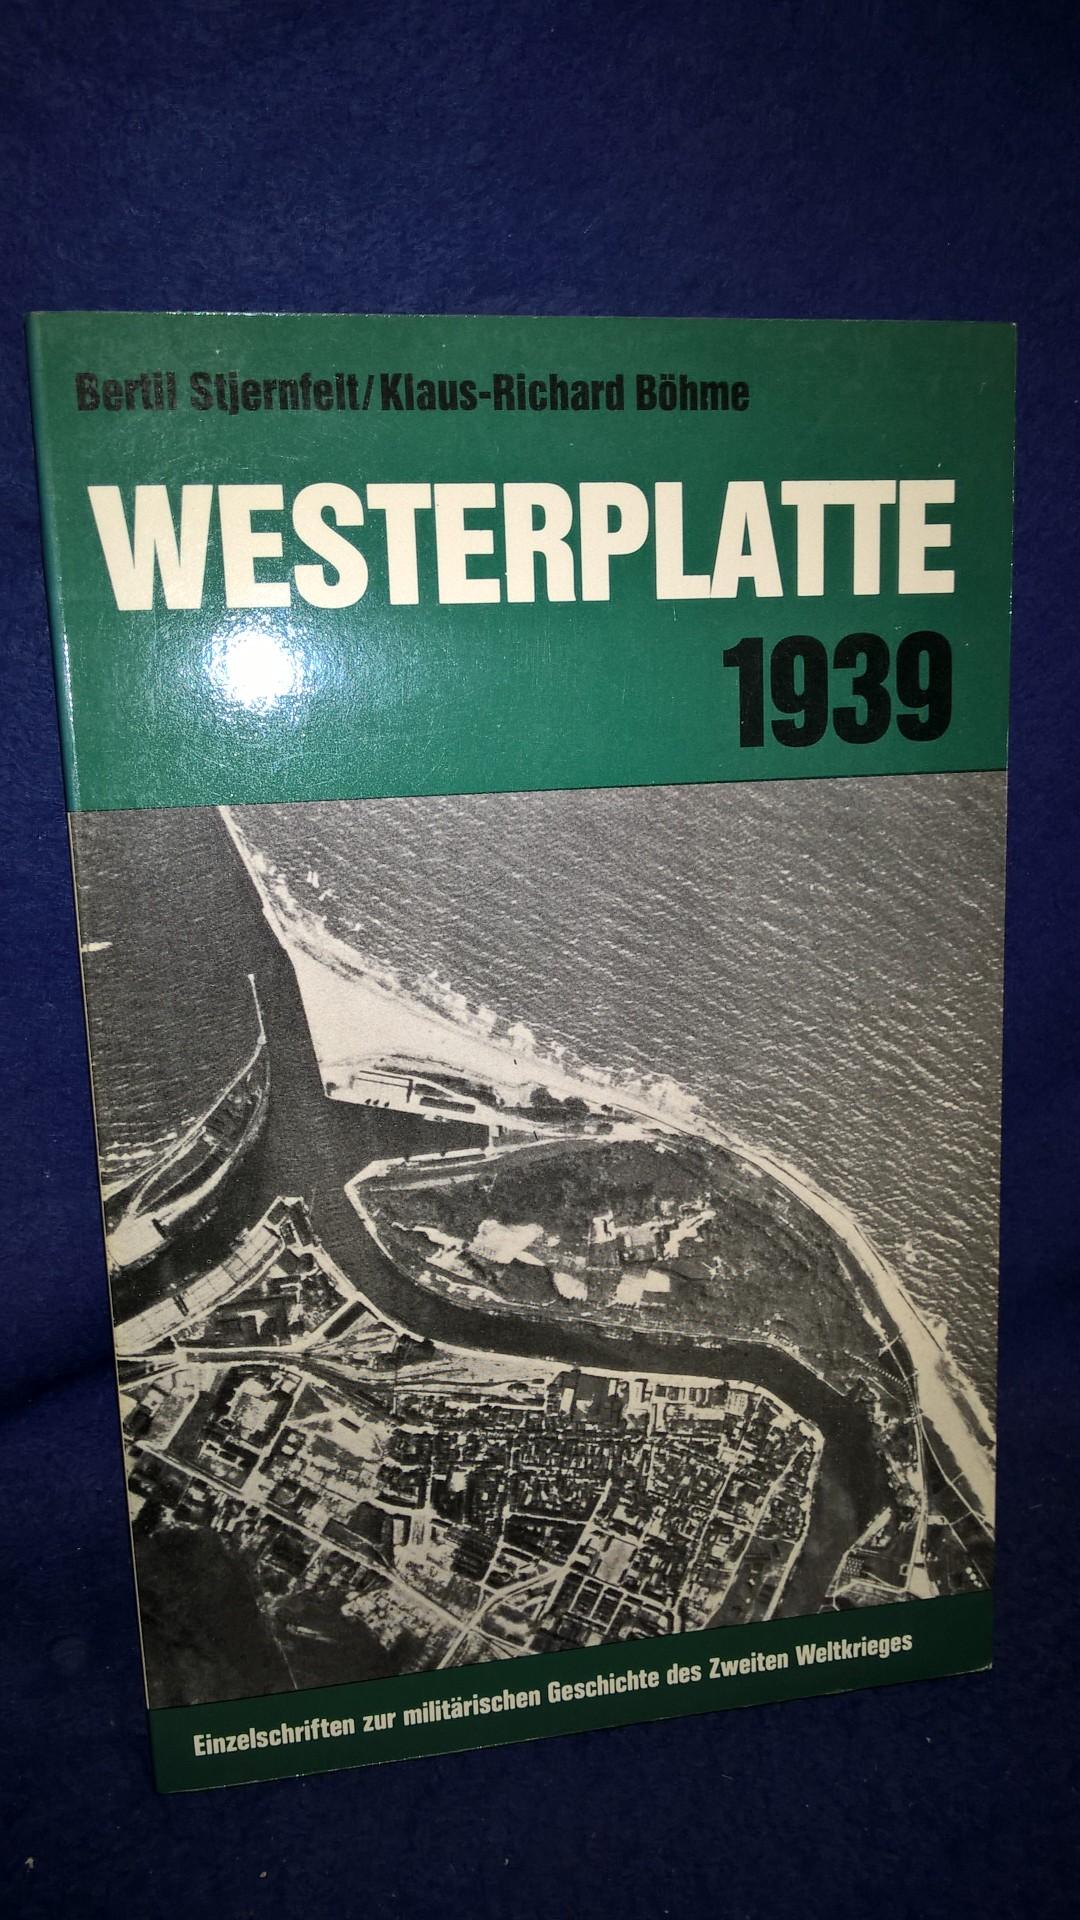 Einzelschriften zur militärischen Geschichte des 2.Weltkrieges - Band 23: Westerplatte 1939.